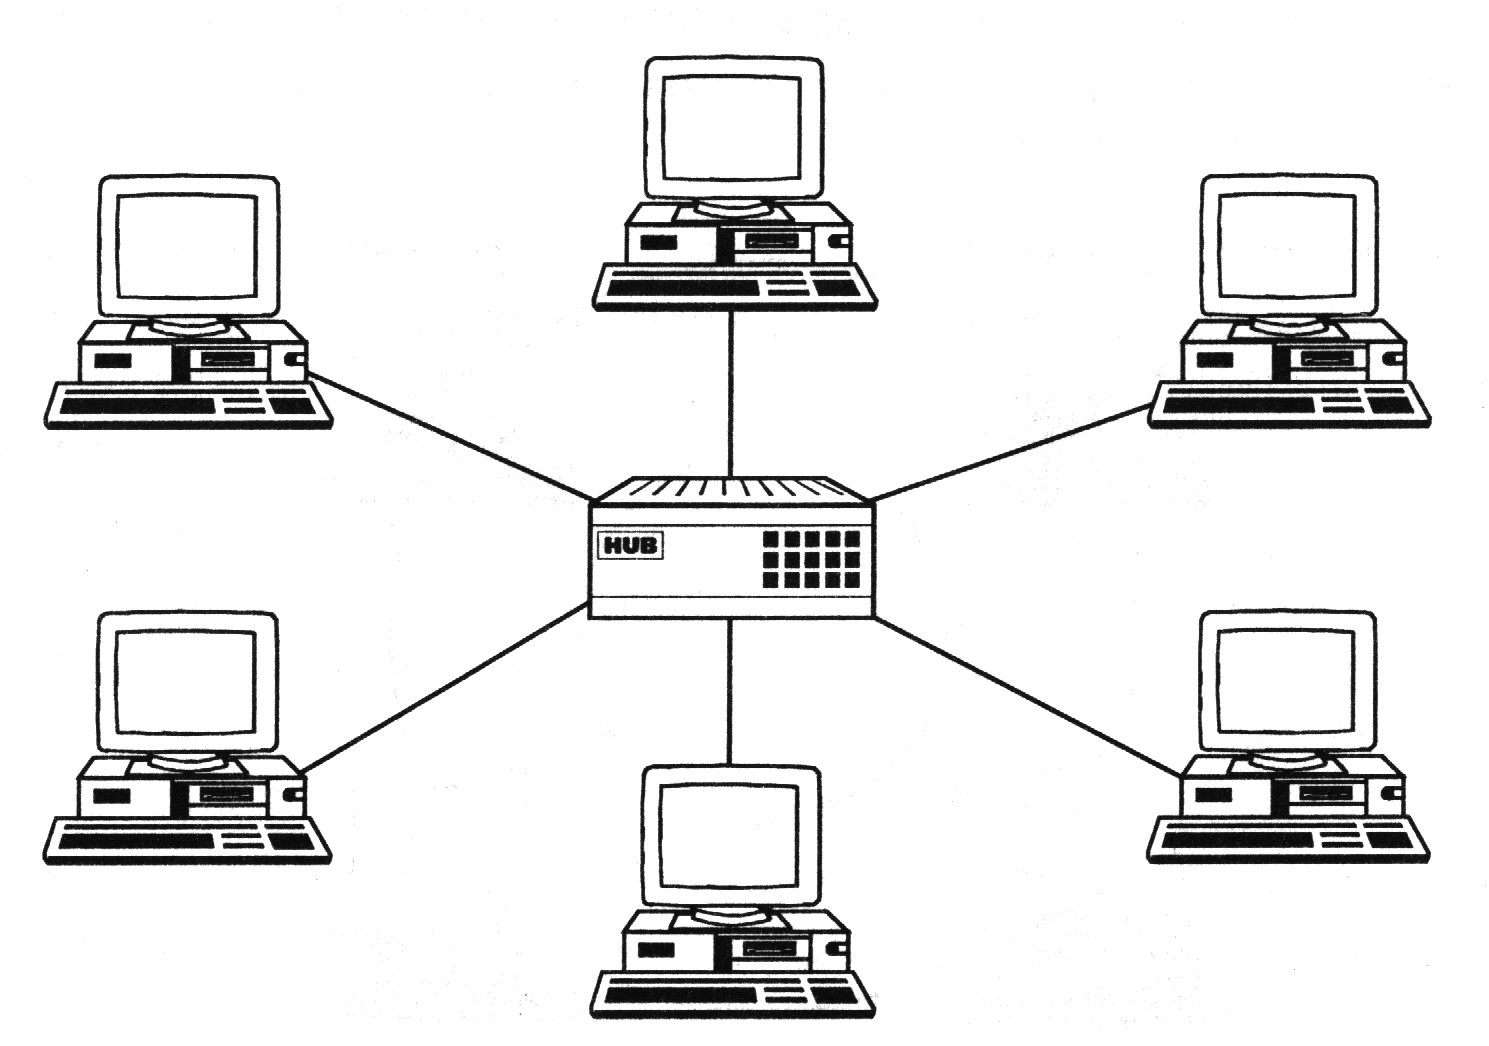 Локальные компьютерные сети типы сетей